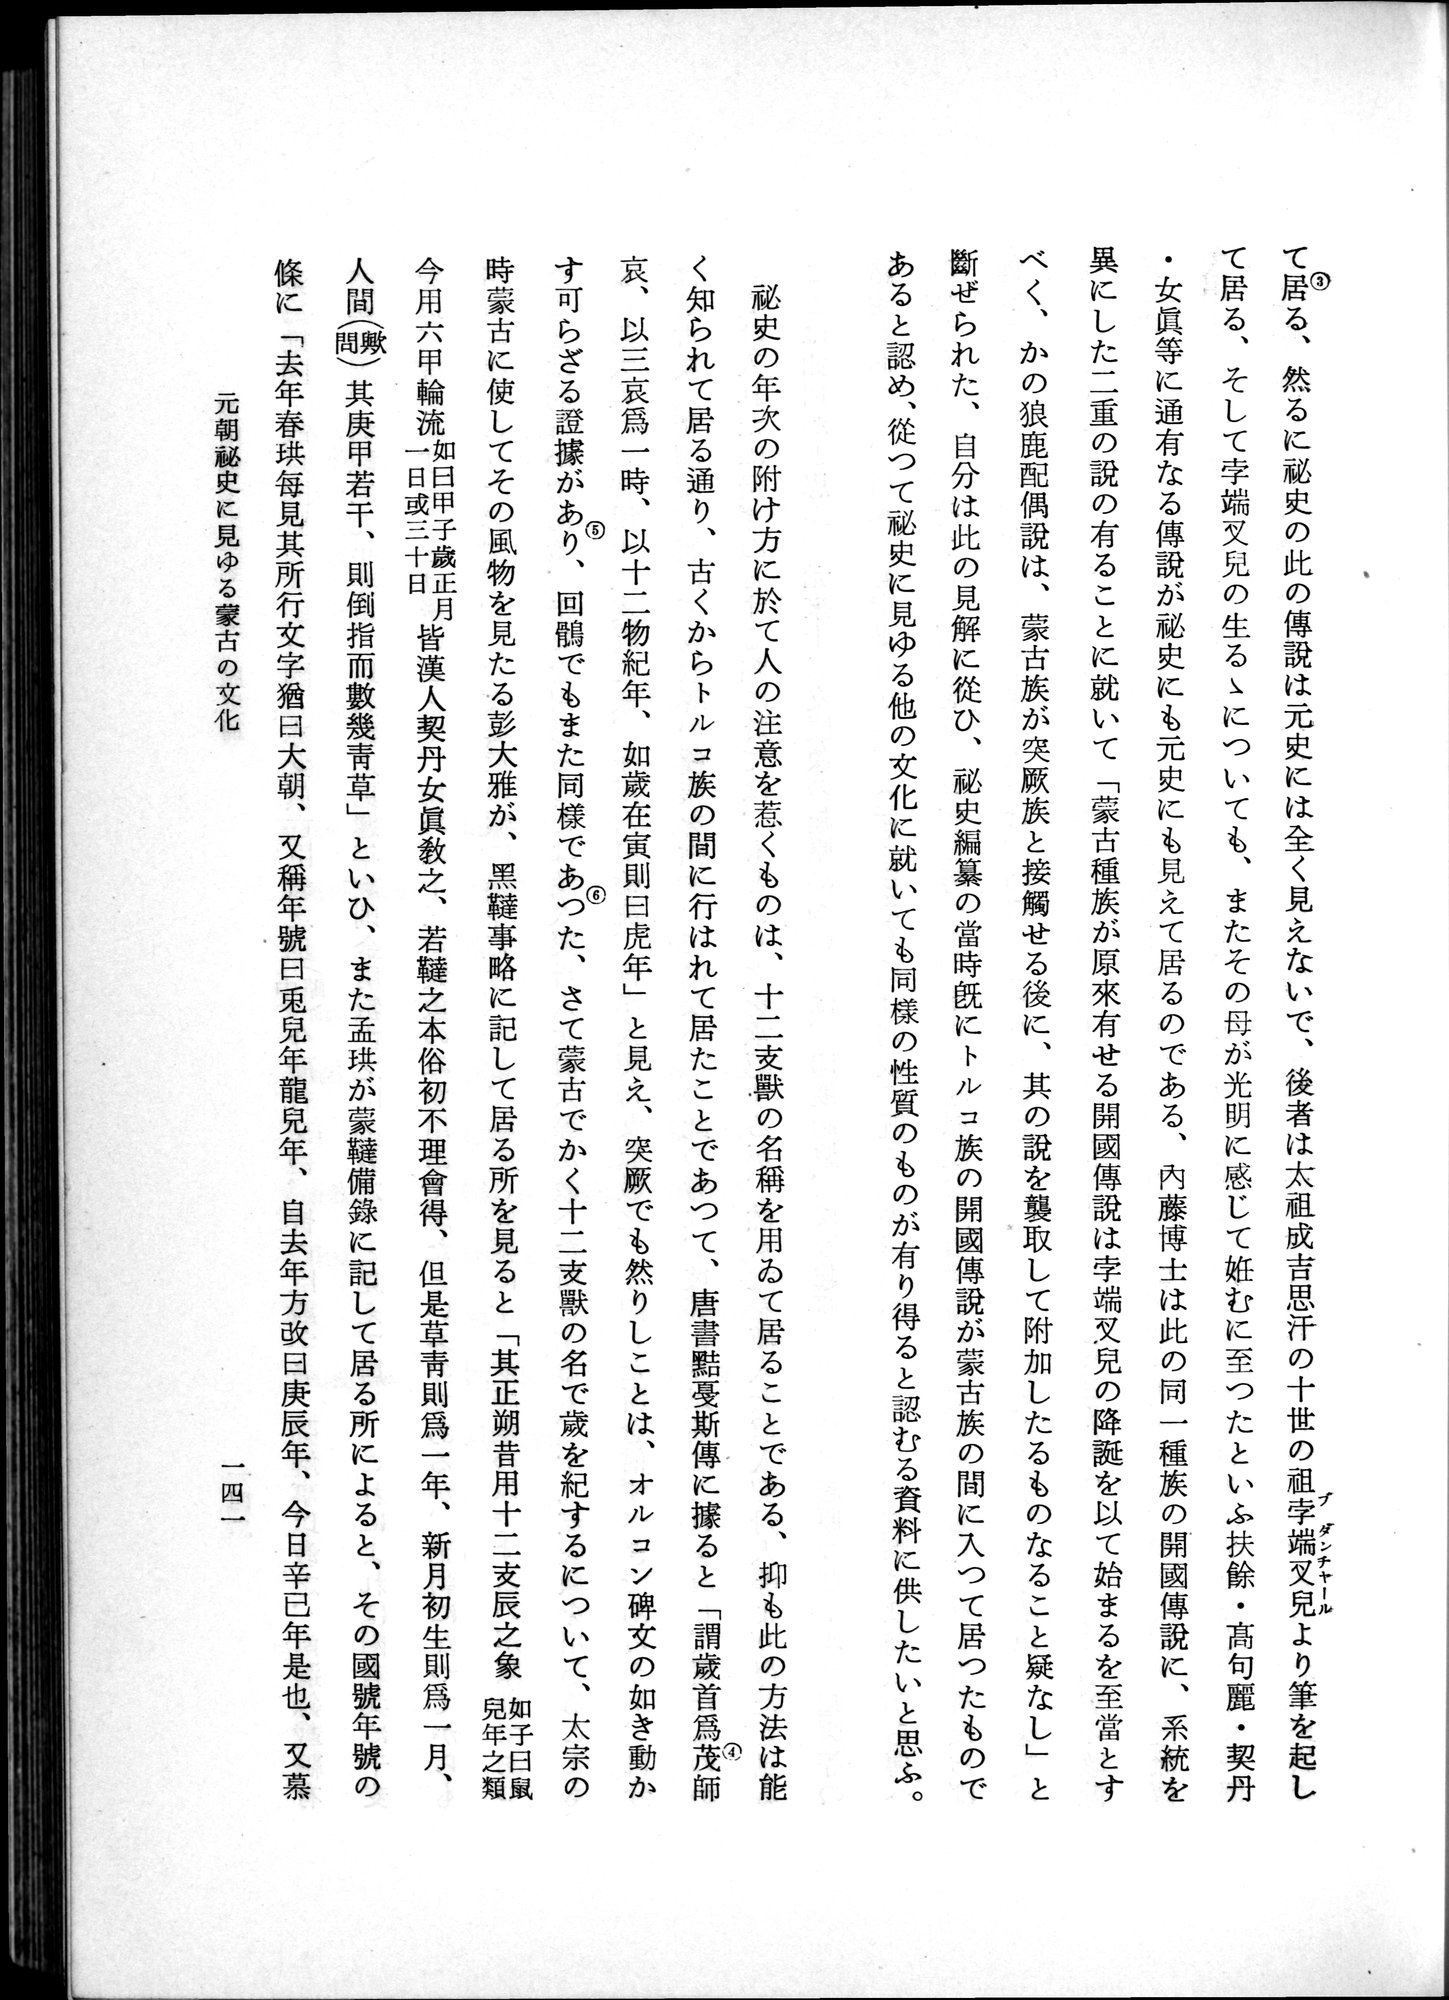 羽田博士史学論文集 : vol.1 / Page 179 (Grayscale High Resolution Image)